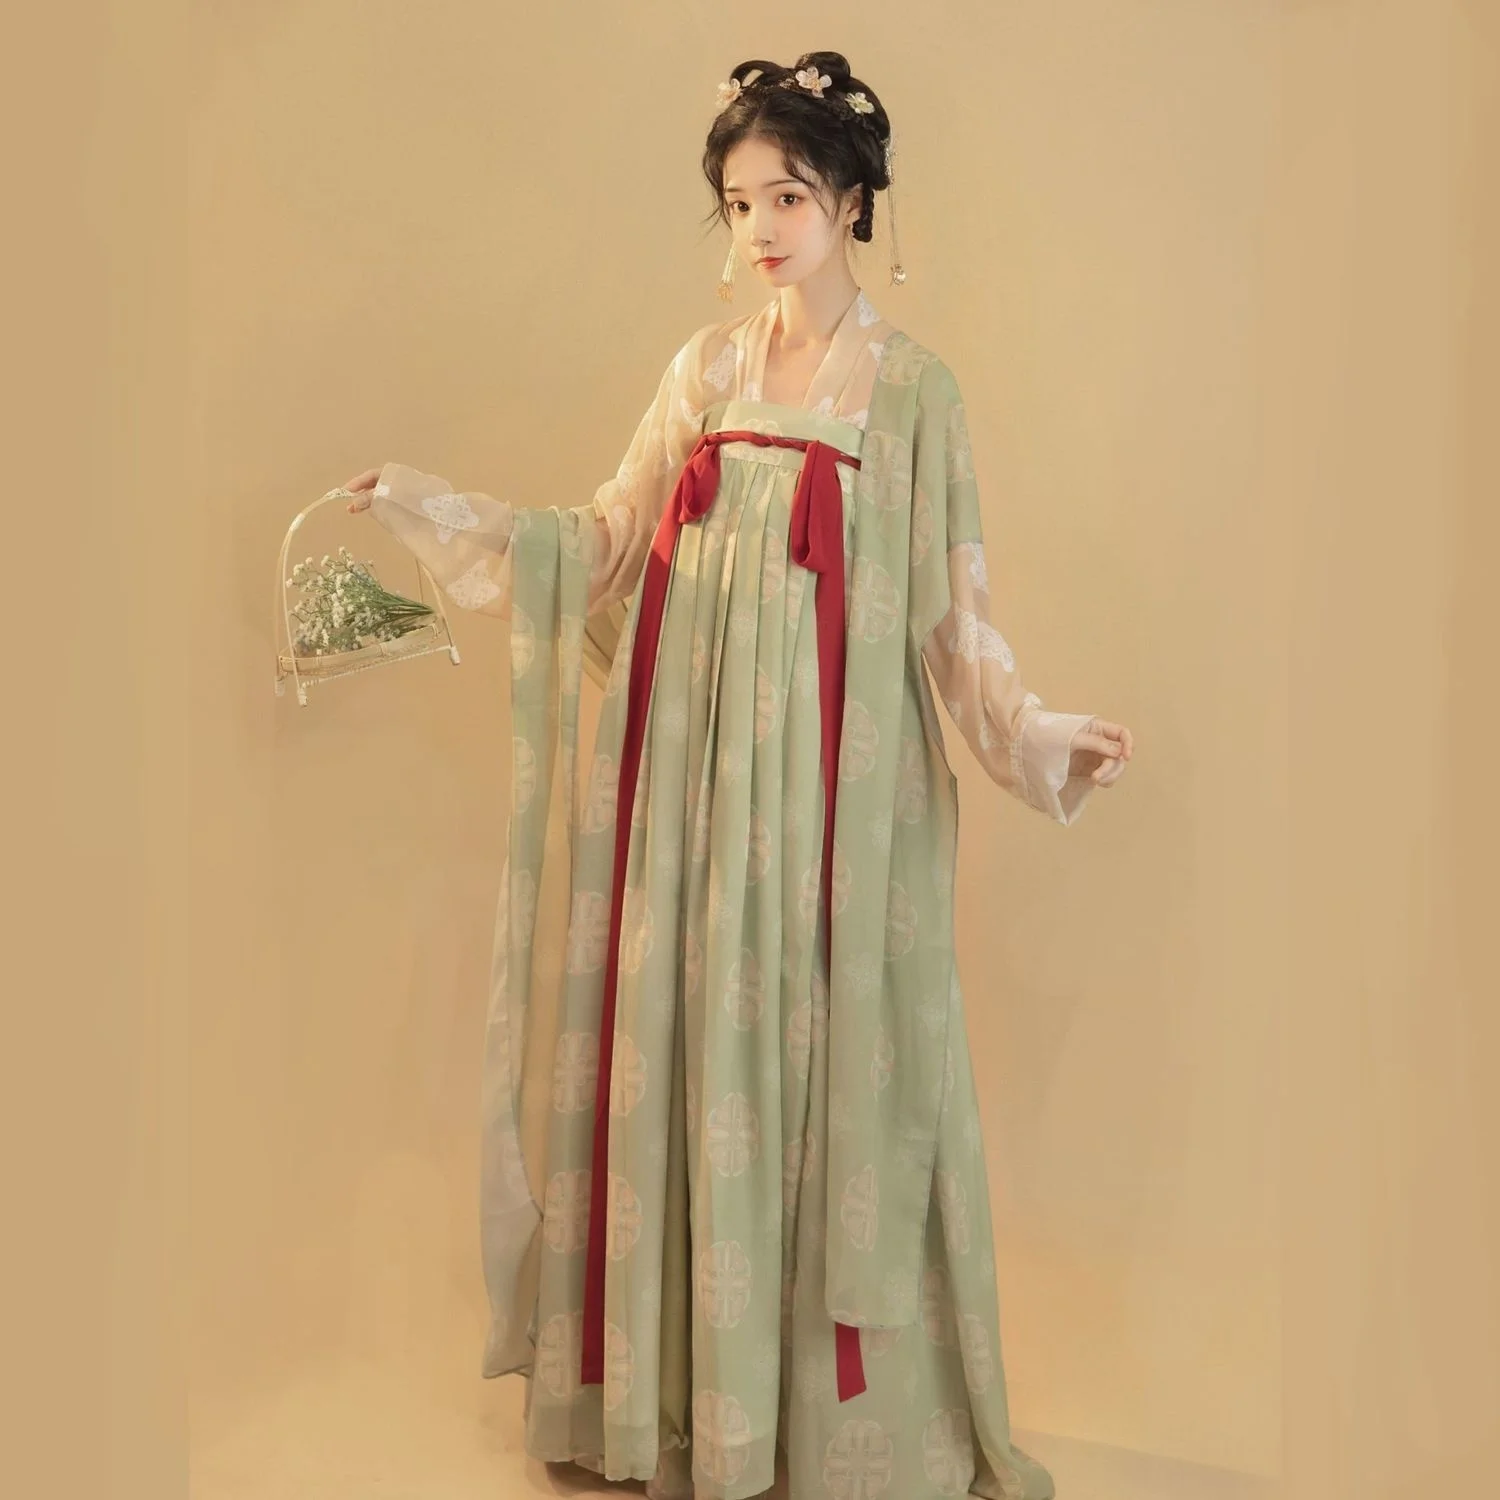 פרחים Hanfu סינית מסורתית נשים פיית תחפושות רטרו שושלת טאנג Cosplay הבמה ללבוש בקיץ - 3